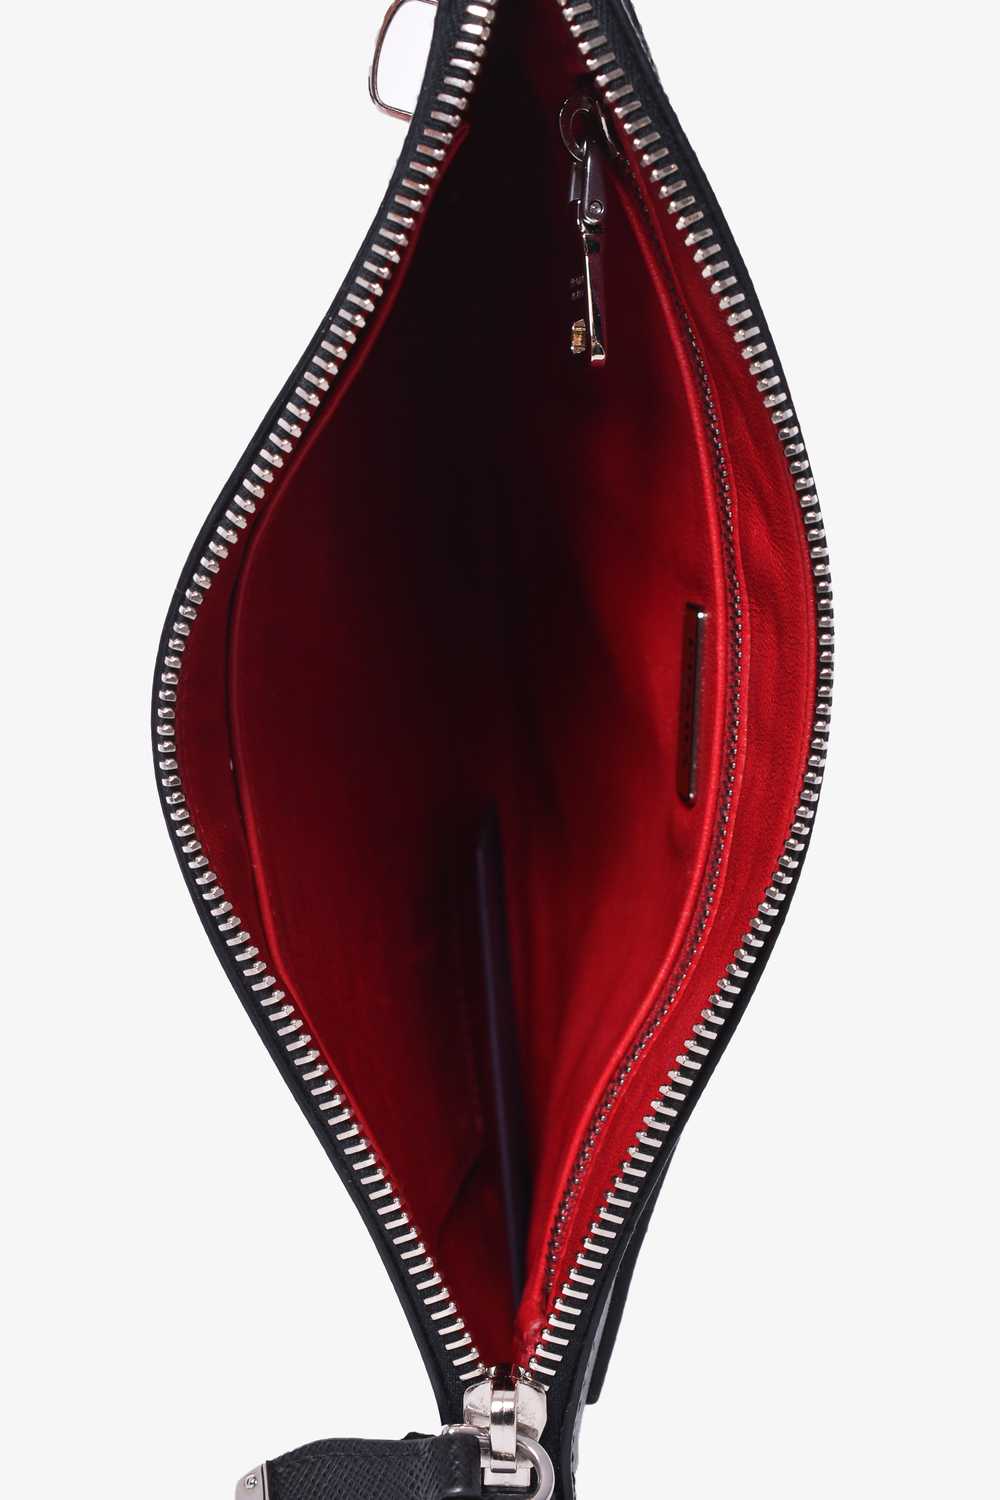 Prada Multicolor Leather Lipstick Graphic Pochett… - image 9